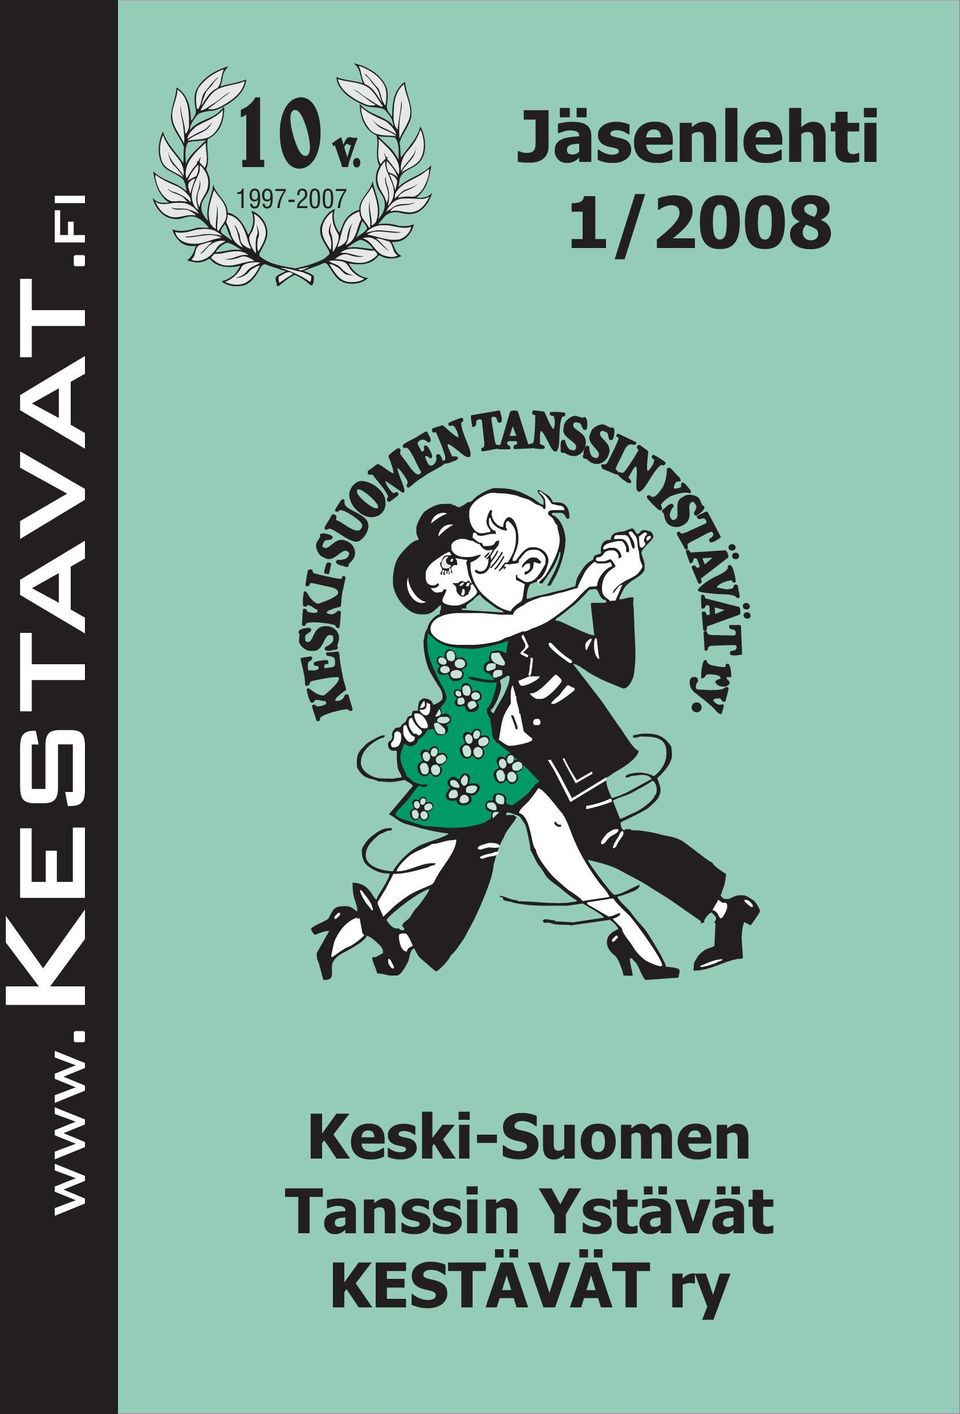 1/2008 Keski-Suomen